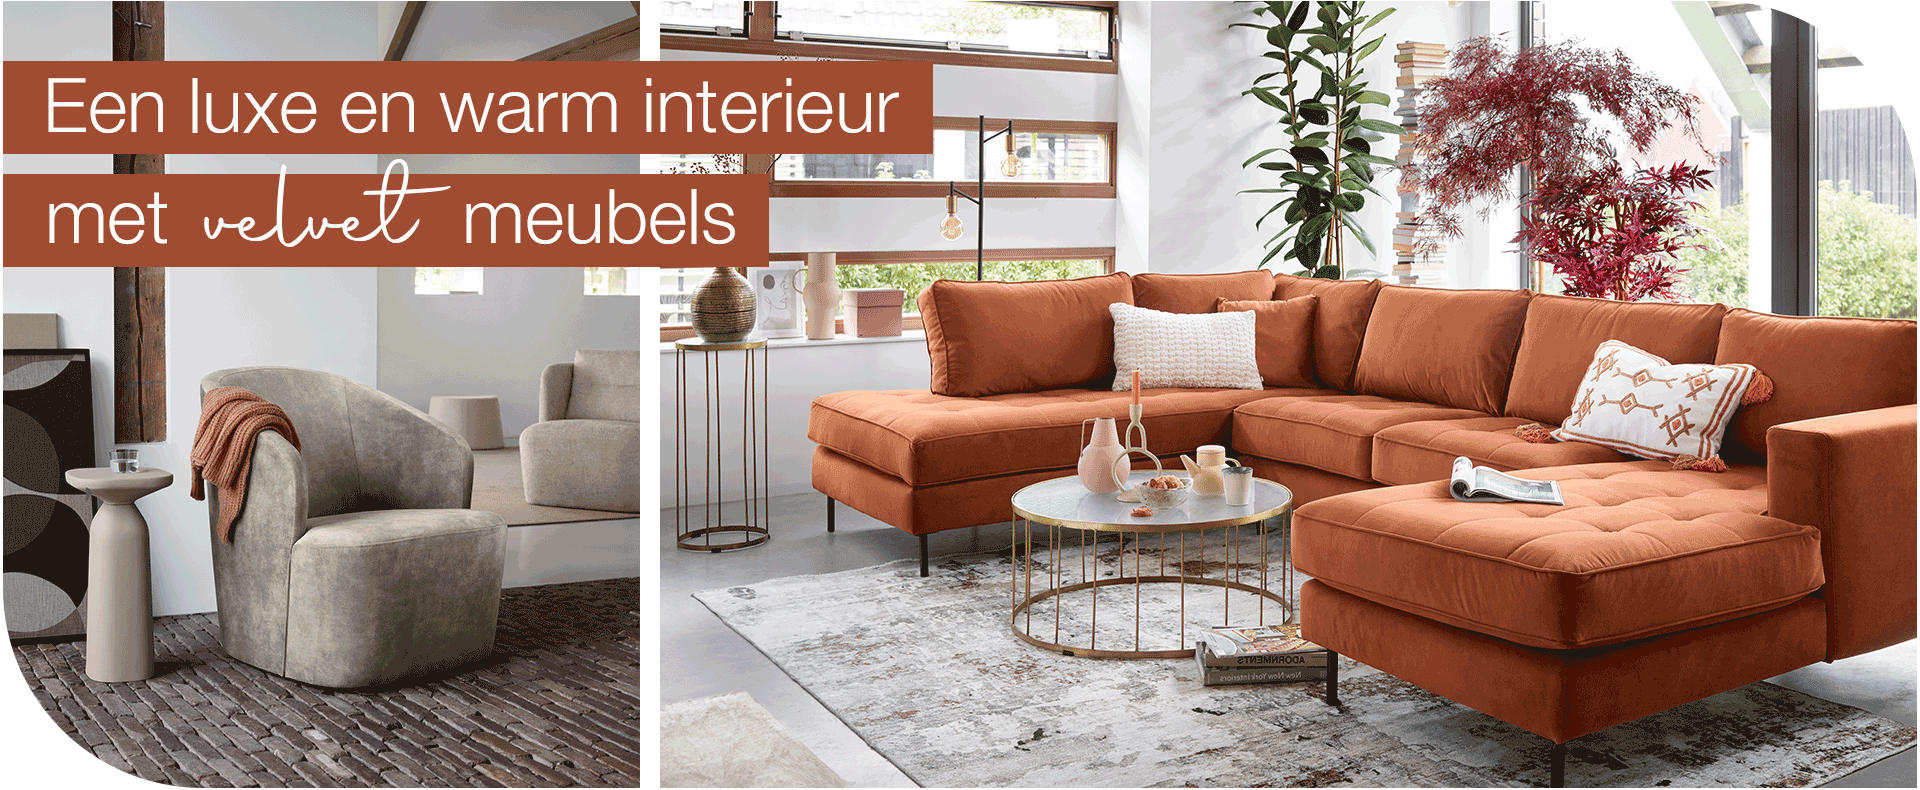 Een luxe en warm interieur met velvet meubels